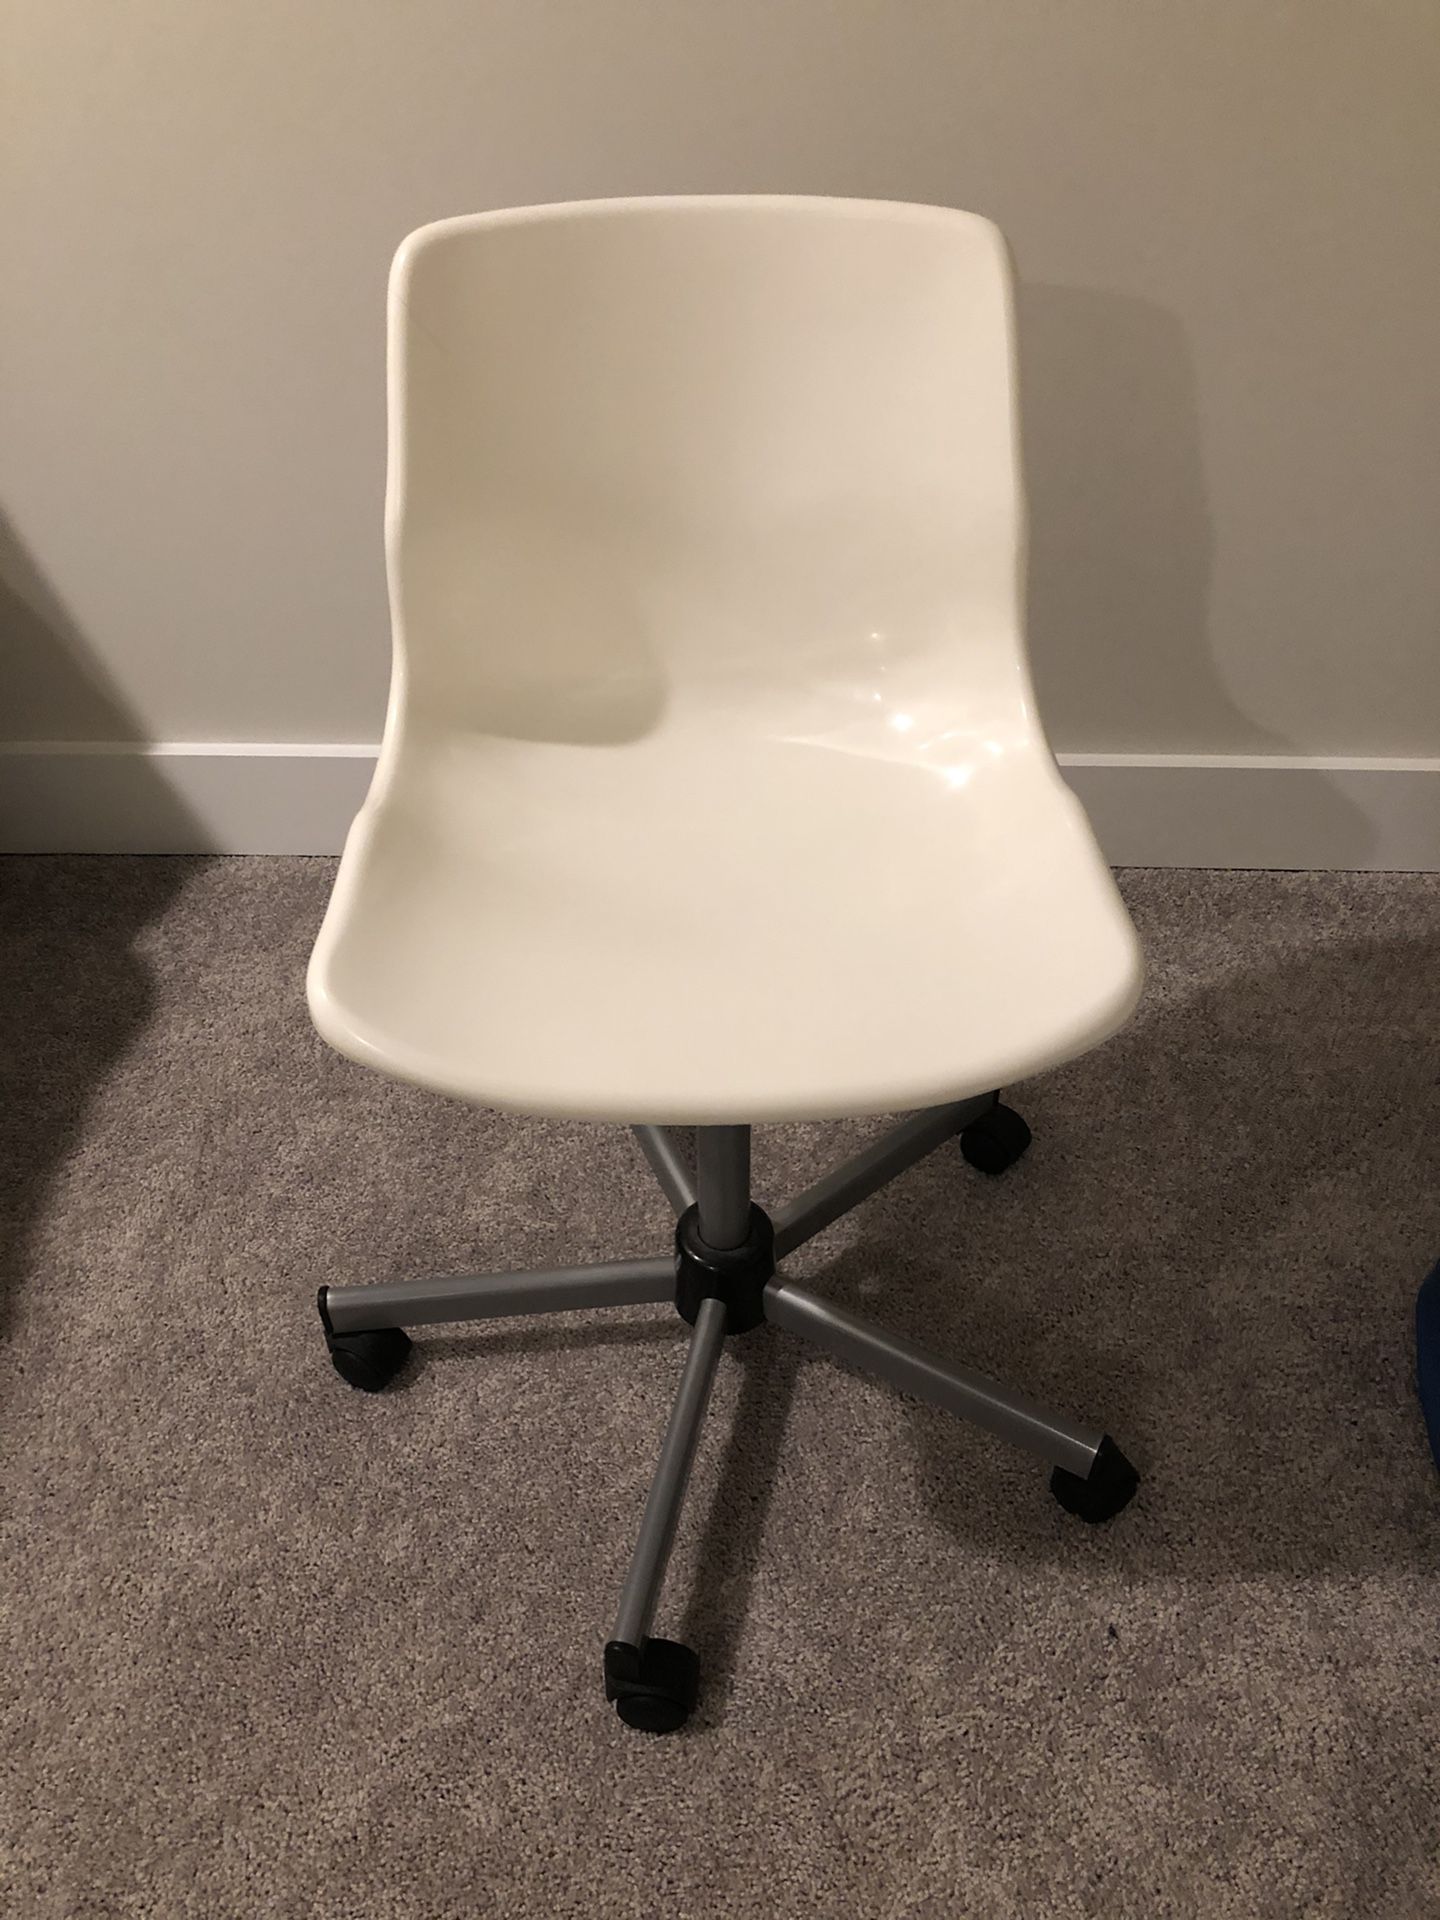 IKEA desk chair